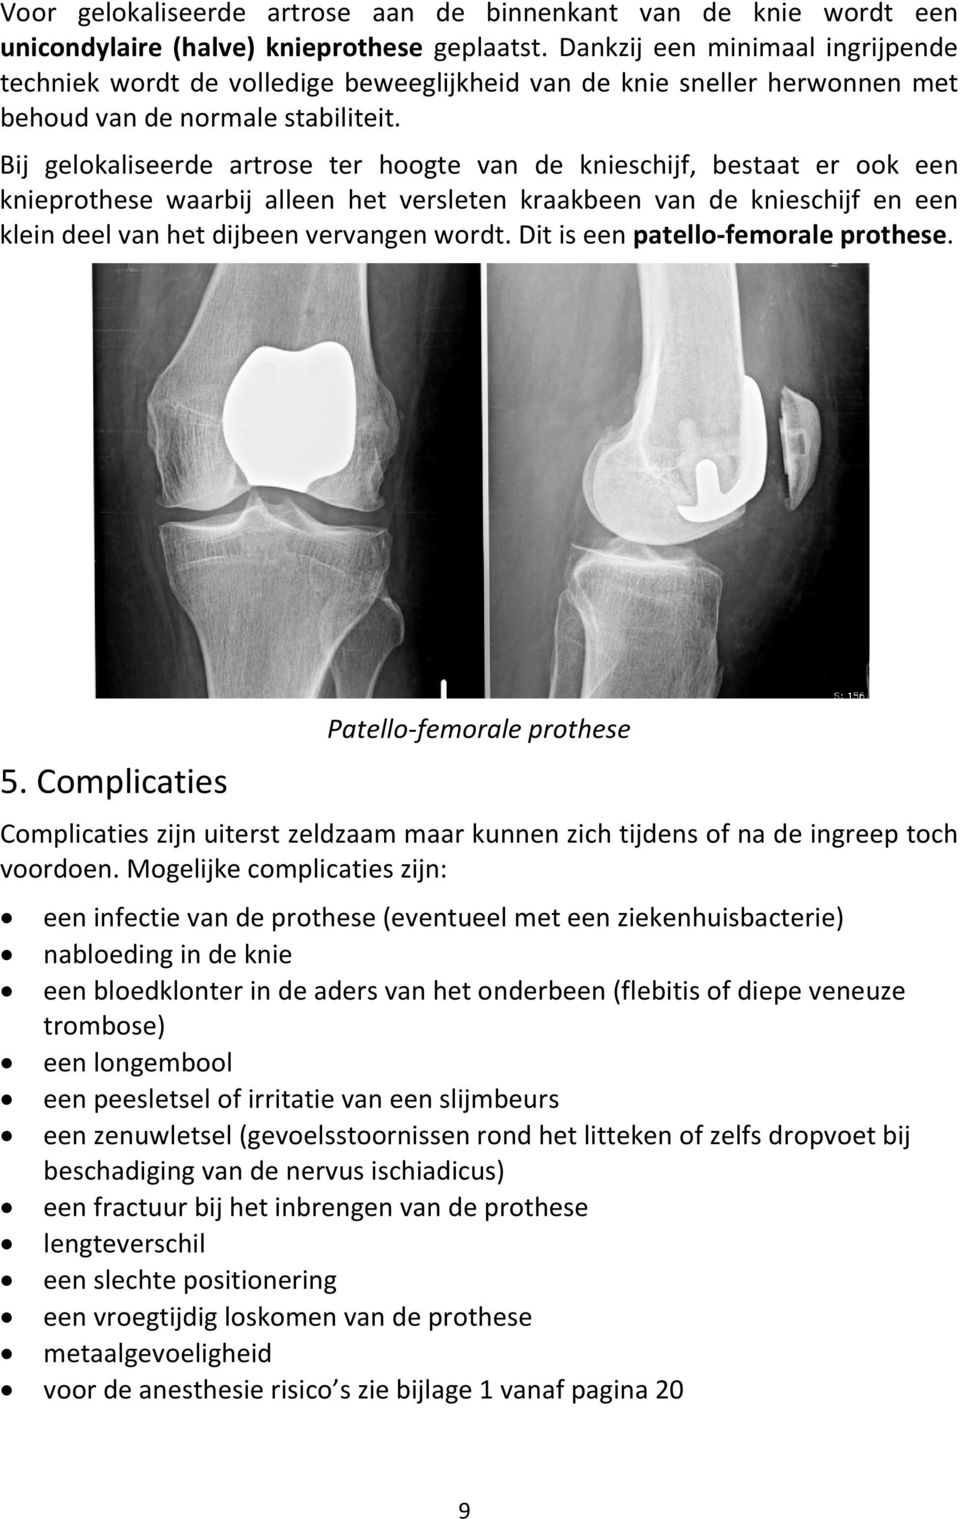 Bij gelokaliseerde artrose ter hoogte van de knieschijf, bestaat er ook een knieprothese waarbij alleen het versleten kraakbeen van de knieschijf en een klein deel van het dijbeen vervangen wordt.